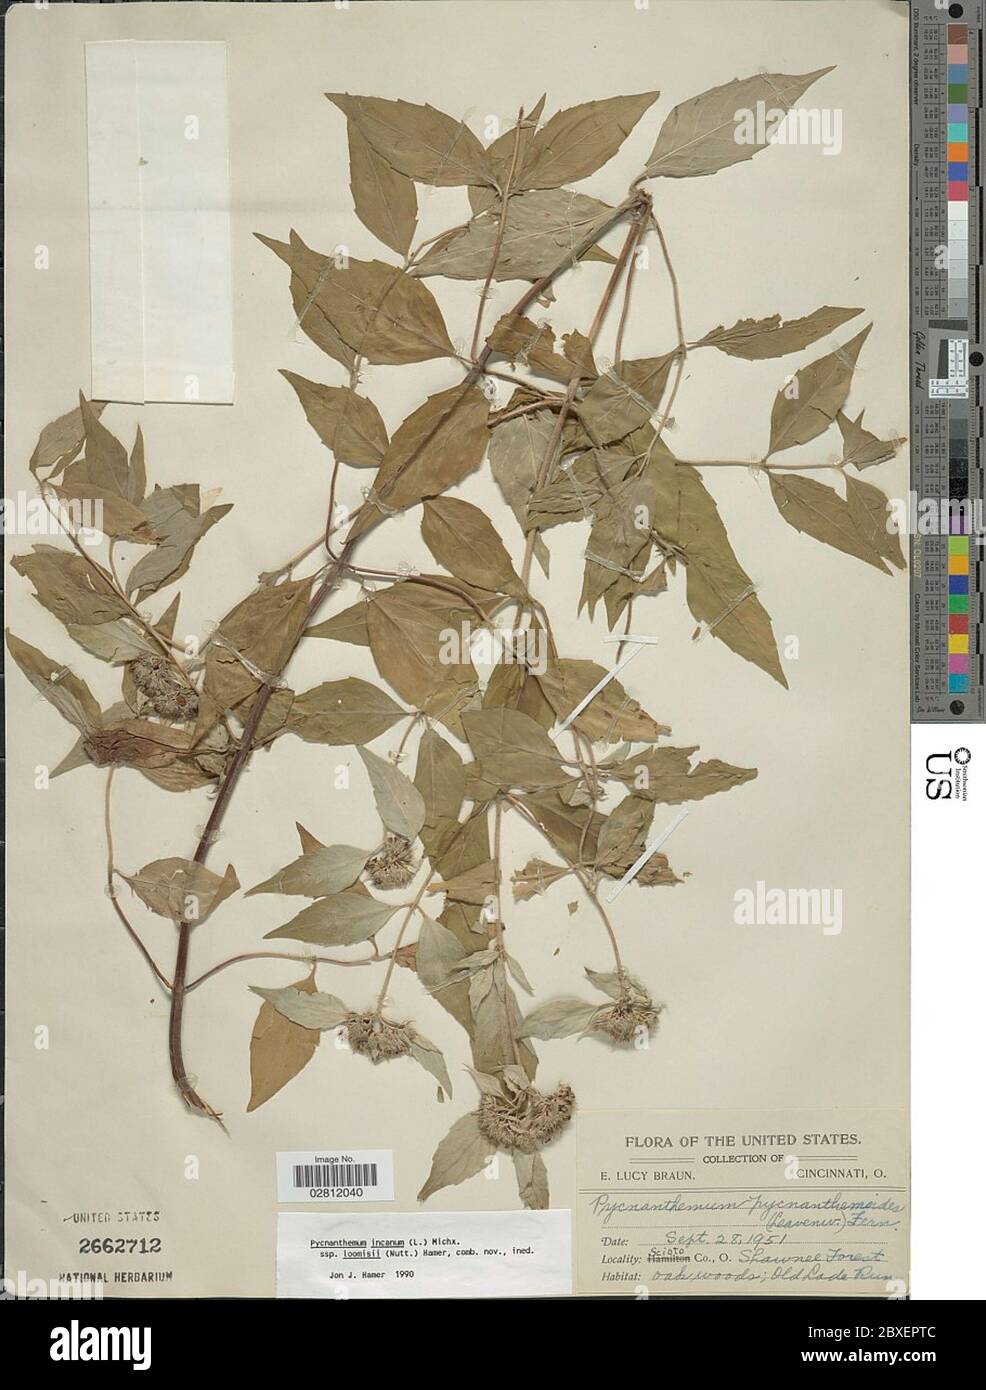 Pycnanthemum incanum L Michx Pycnanthemum incanum L Michx. Stock Photo